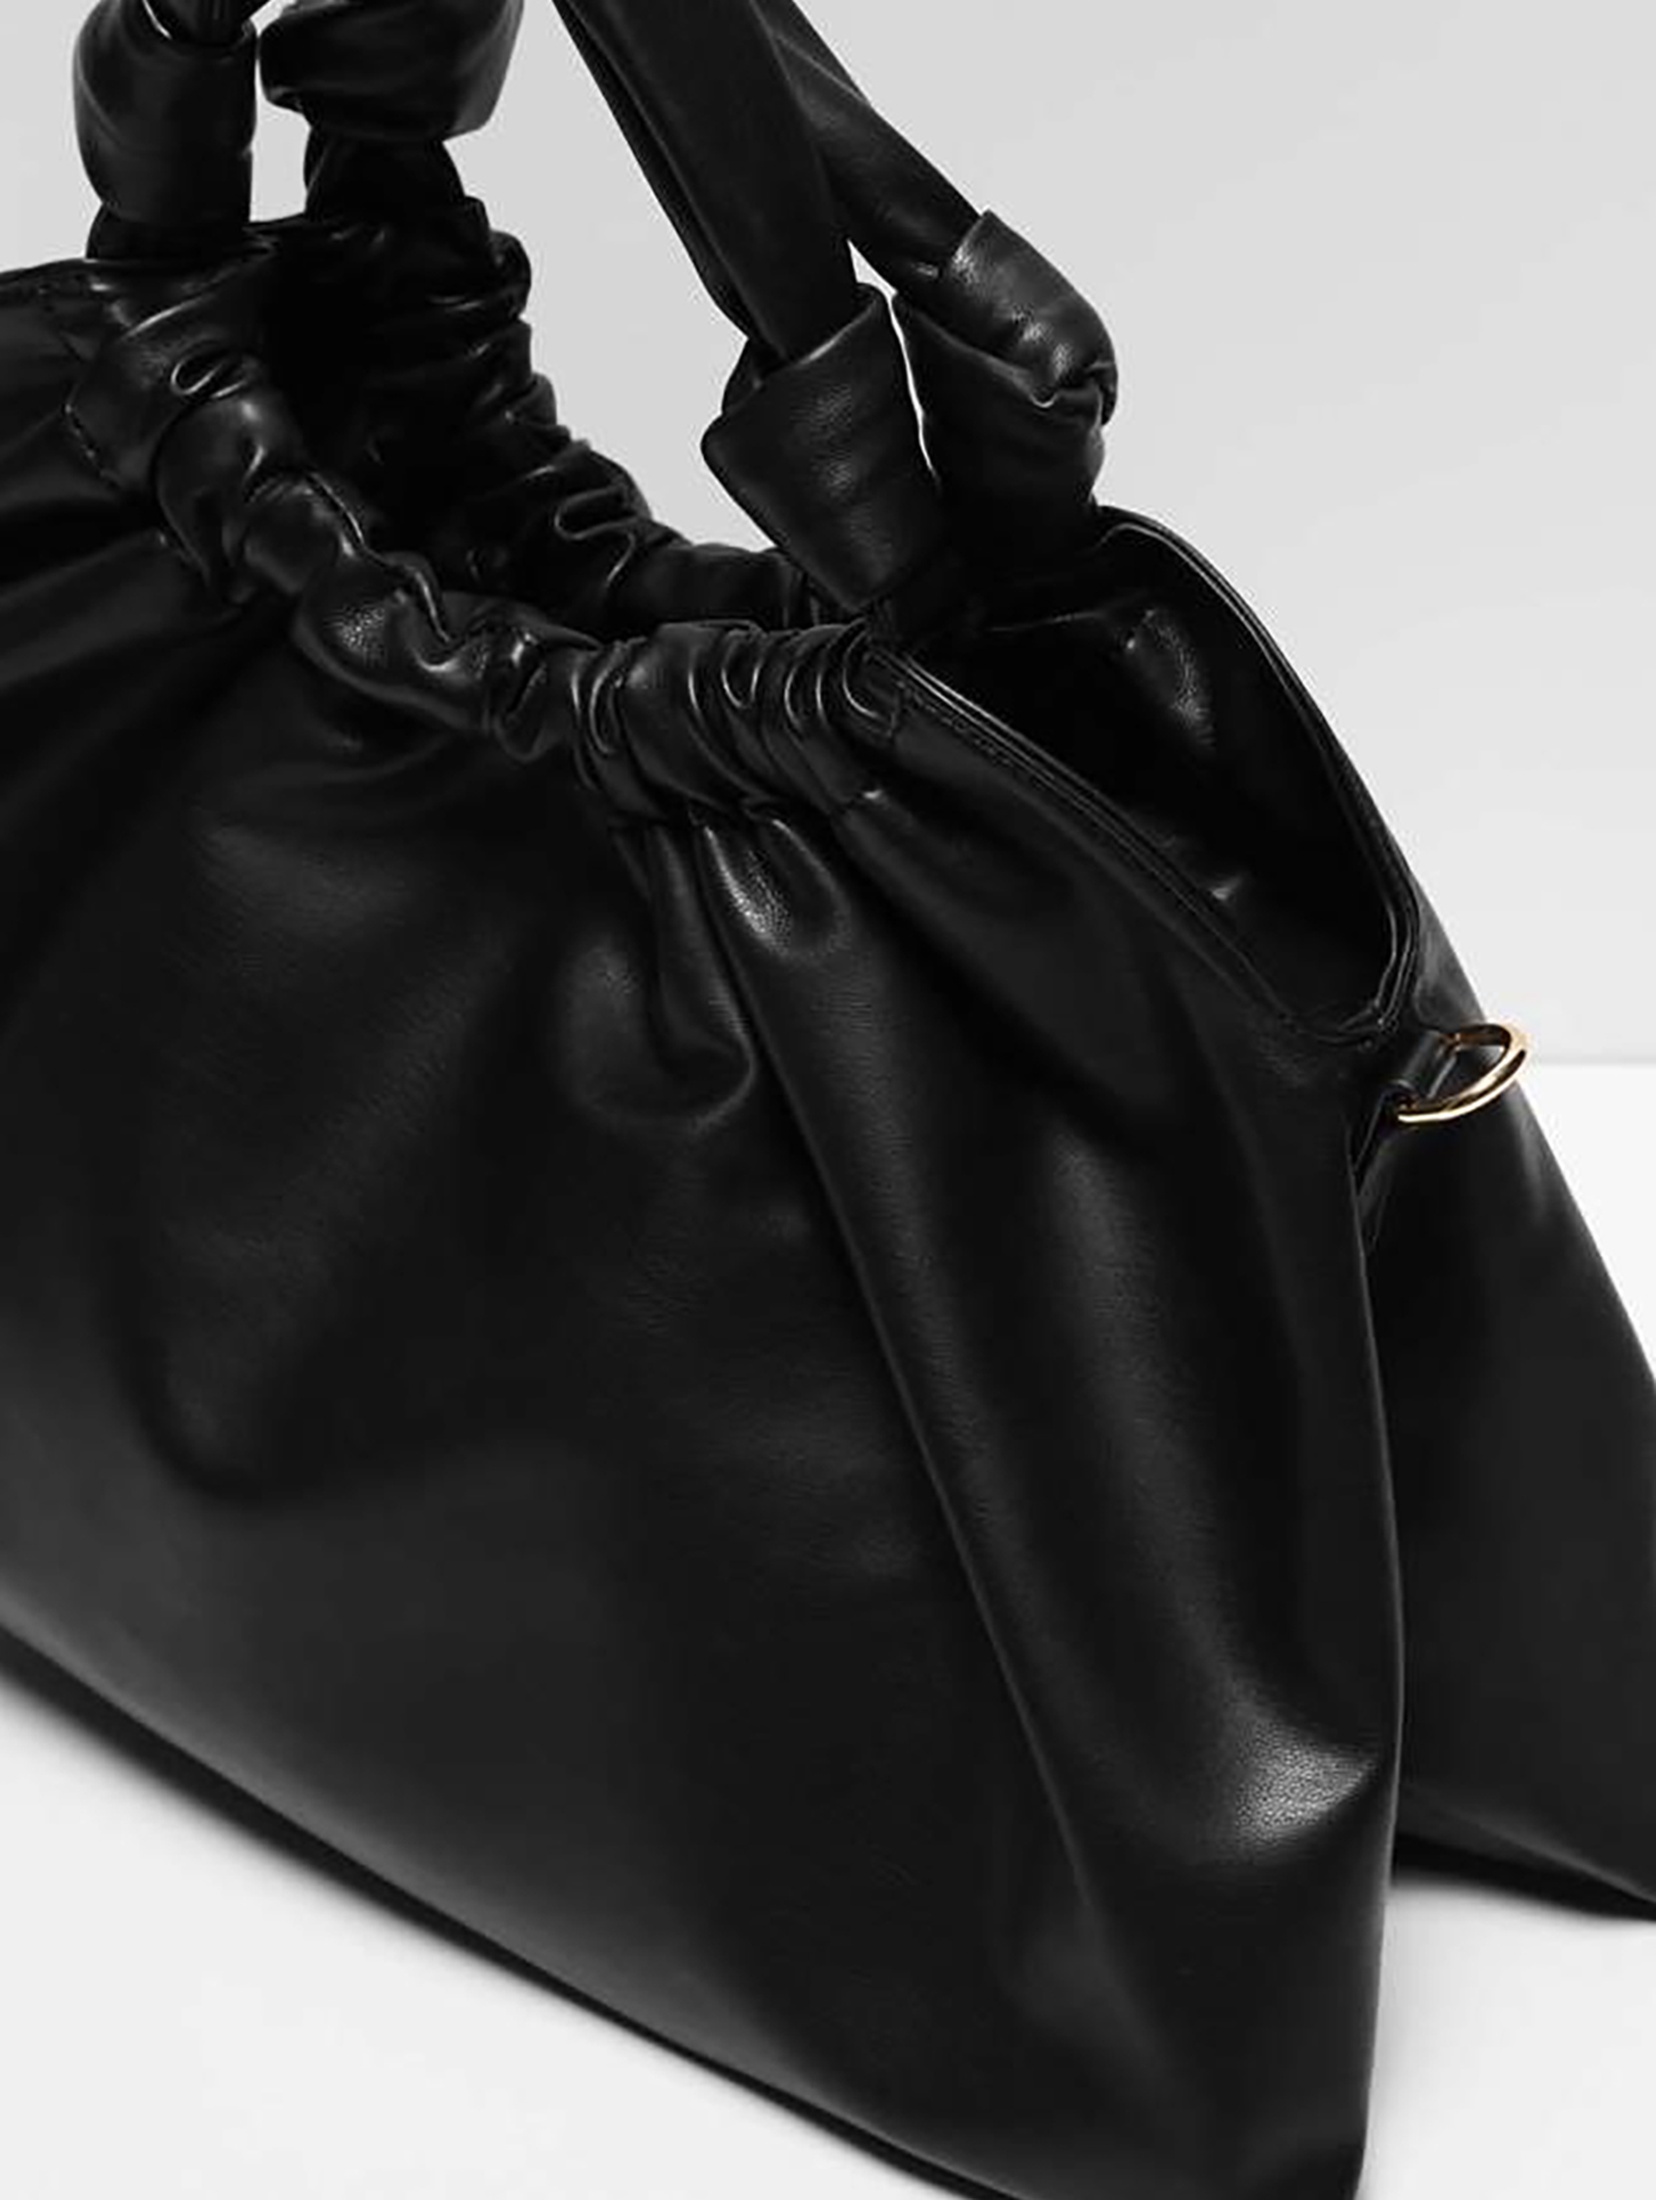 Czarna torebka damska z ekologicznej skóry